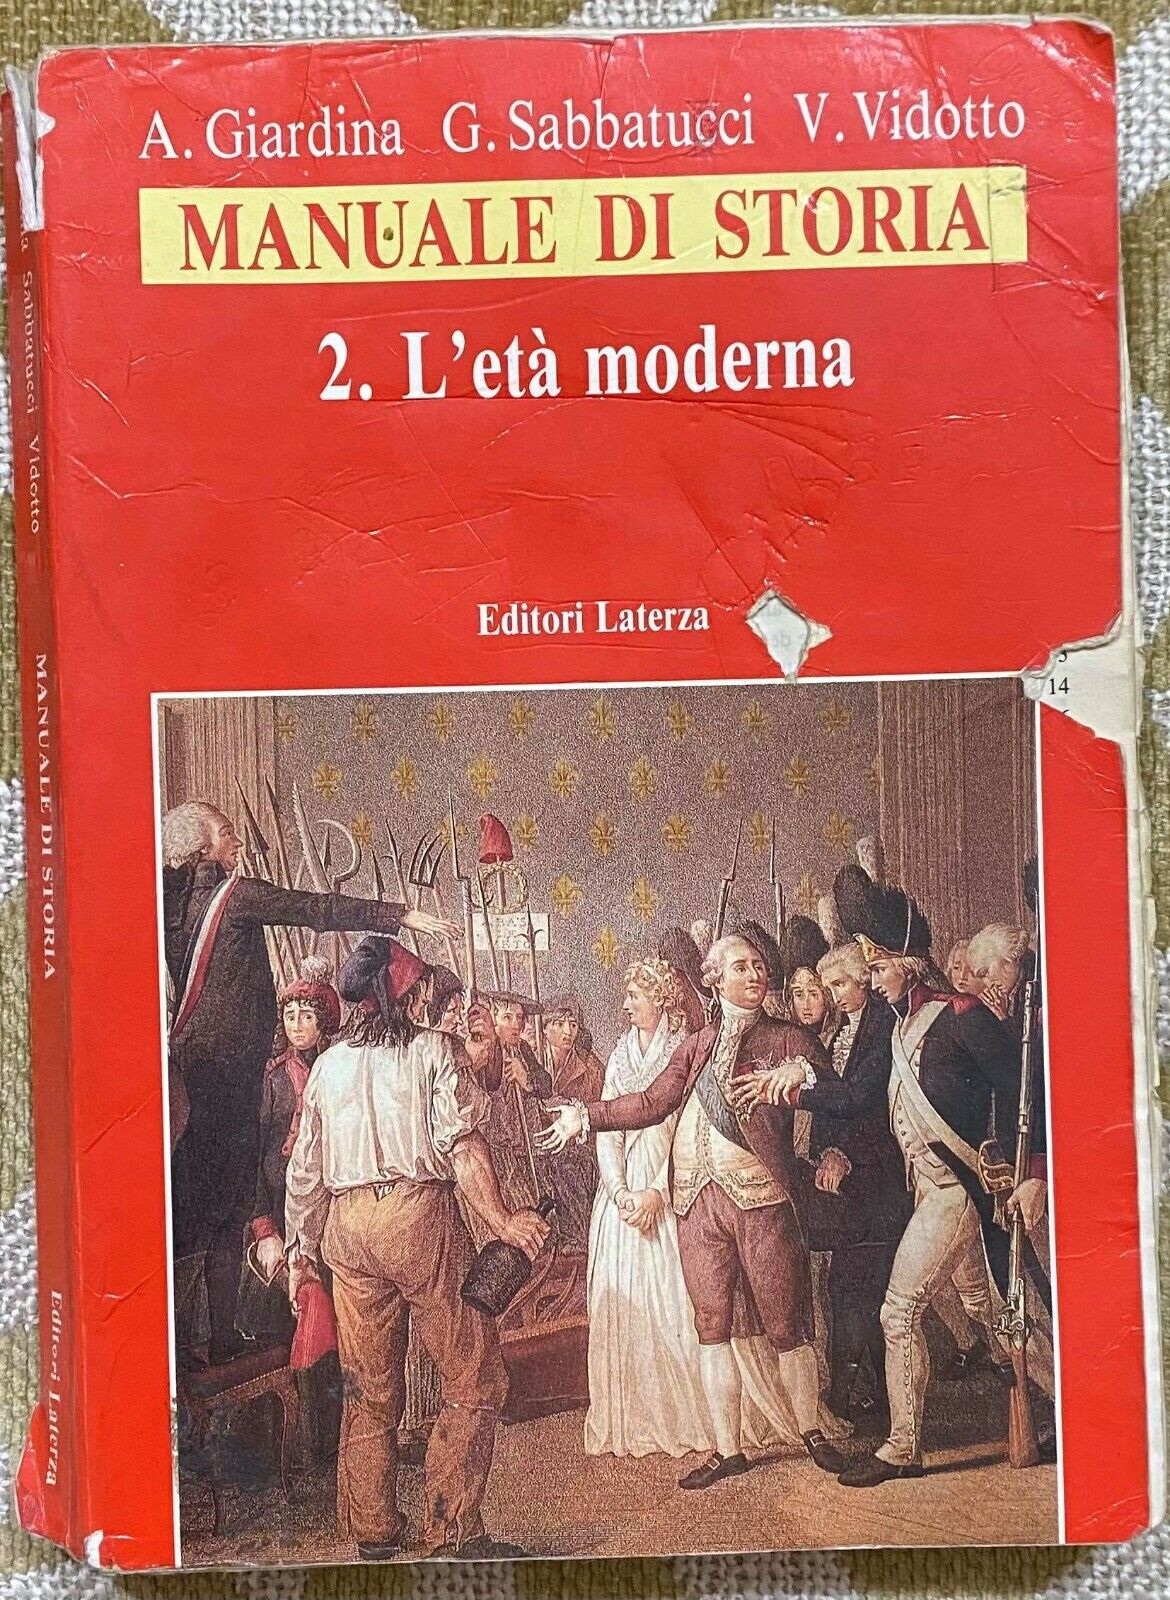 Manuale di storia - Aa.Vv. - Laterza - 1994 - M